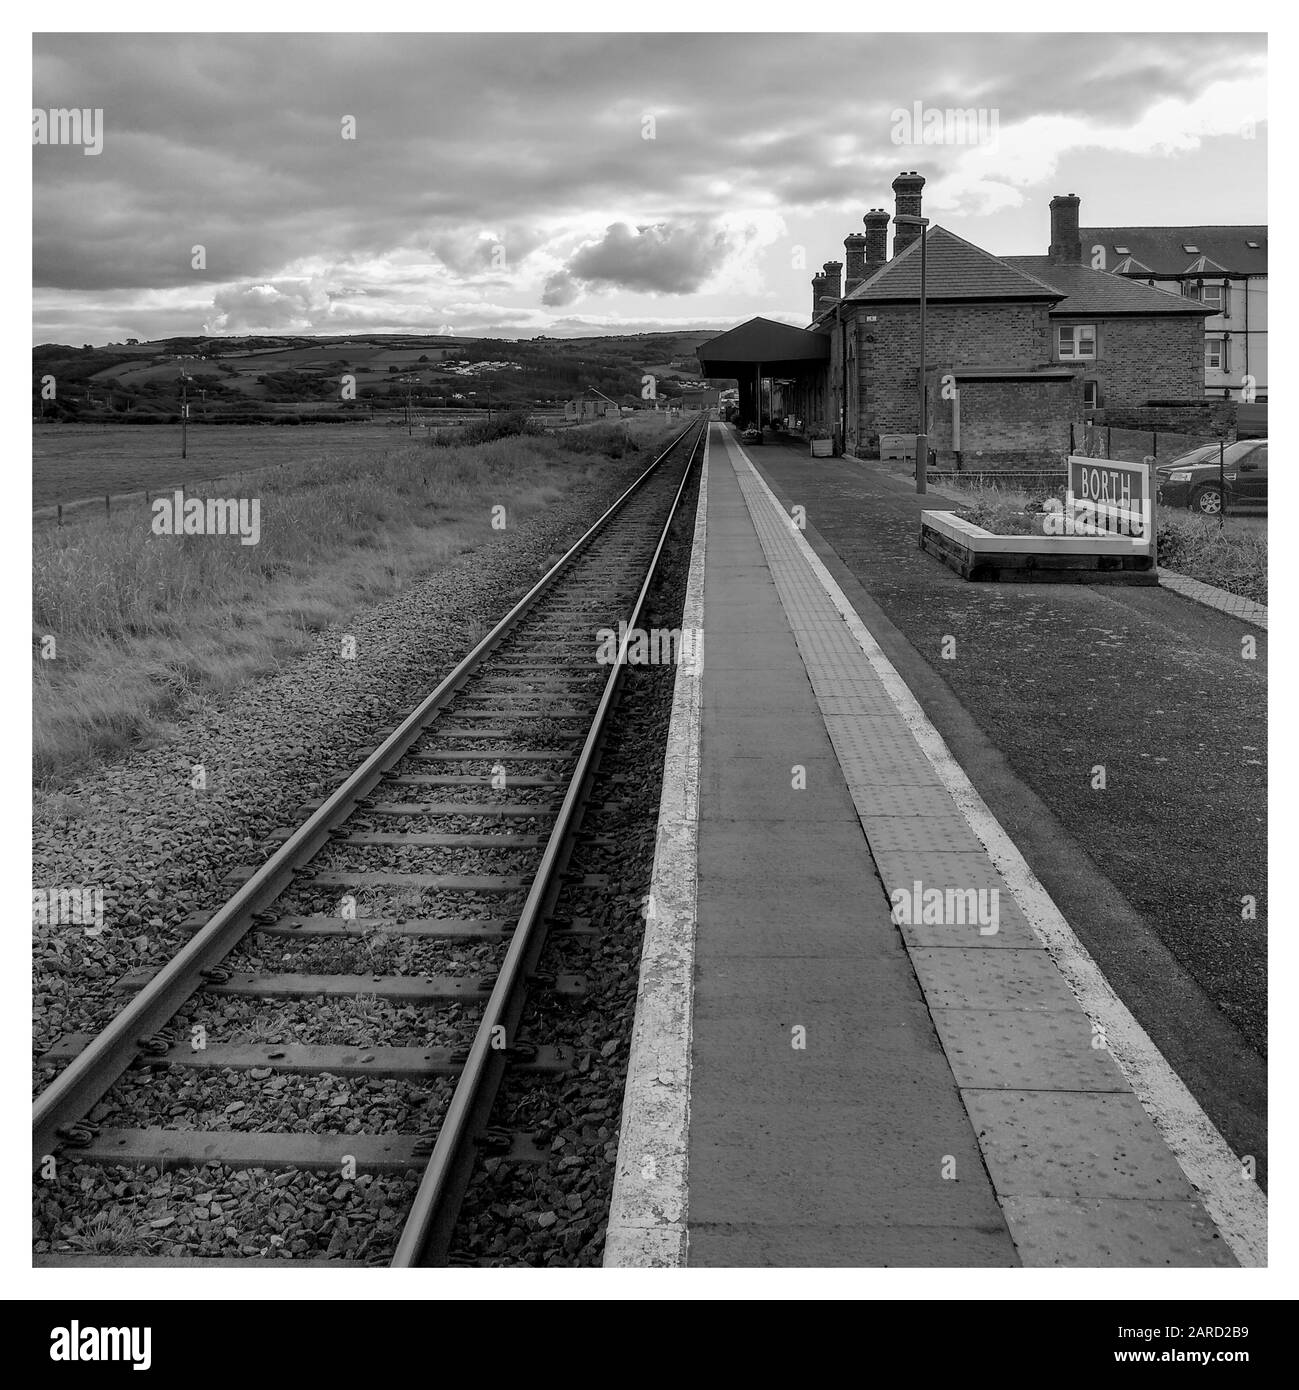 Noir et blanc [monochrome] d'une gare déserte de Borth, les voies disparaissent à l'horizon. Nuages atmosphériques et cadre blanc traditionnel Banque D'Images